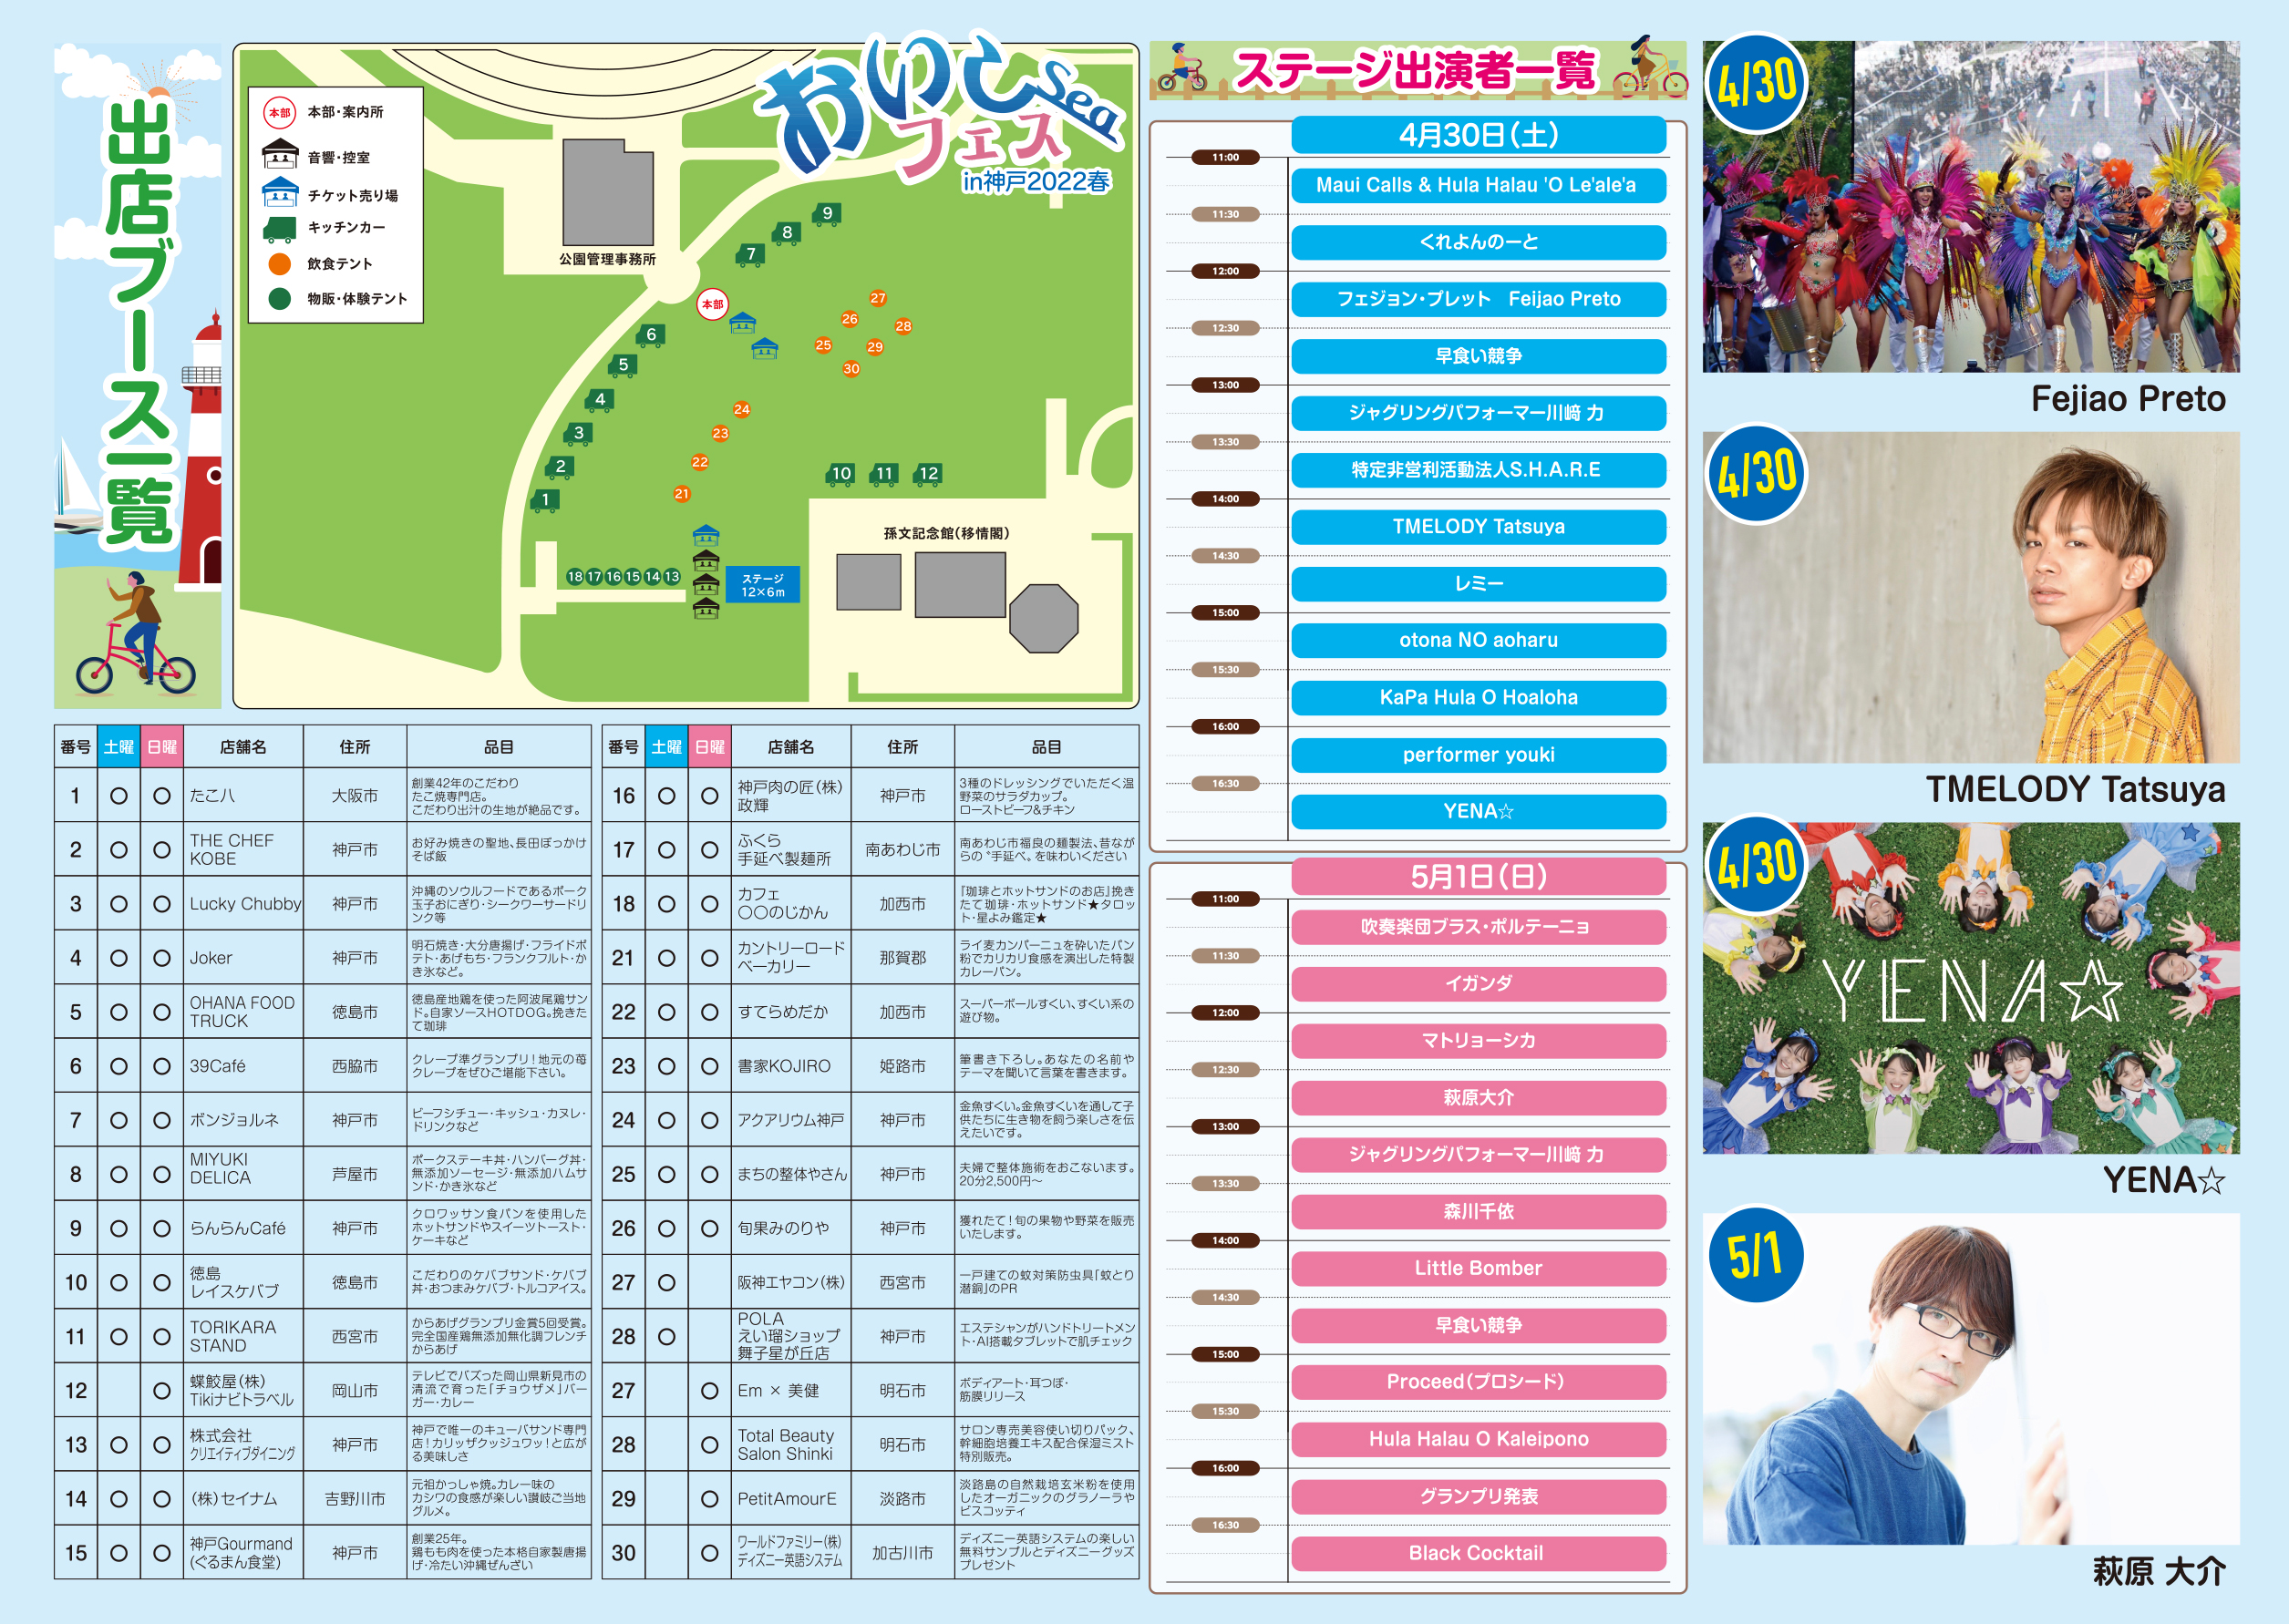 おいしーフェス グルメイベント 兵庫県神戸市 舞子公園 出店 出演 一覧表